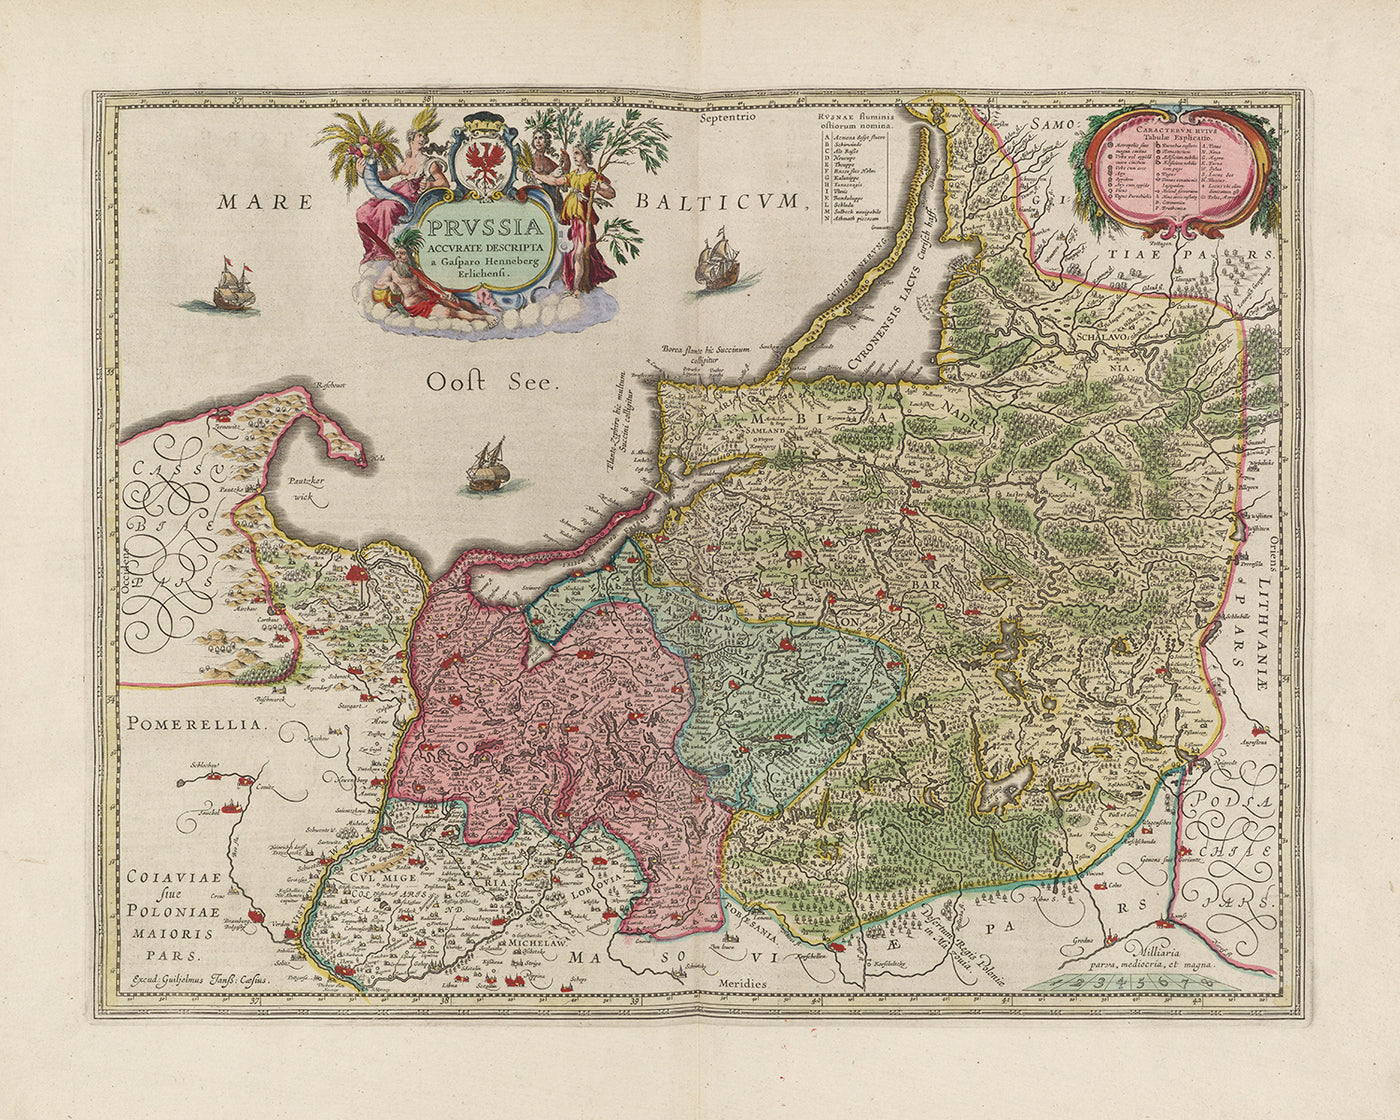 Mapa antiguo de la voivodía de Warmia-Masuria por Joan Blaeu, 1665: Olsztyn, Elbląg, Ełk, Ostroda y Giżycko, con los lagos de Masuria, Biskupiec y Łyna.